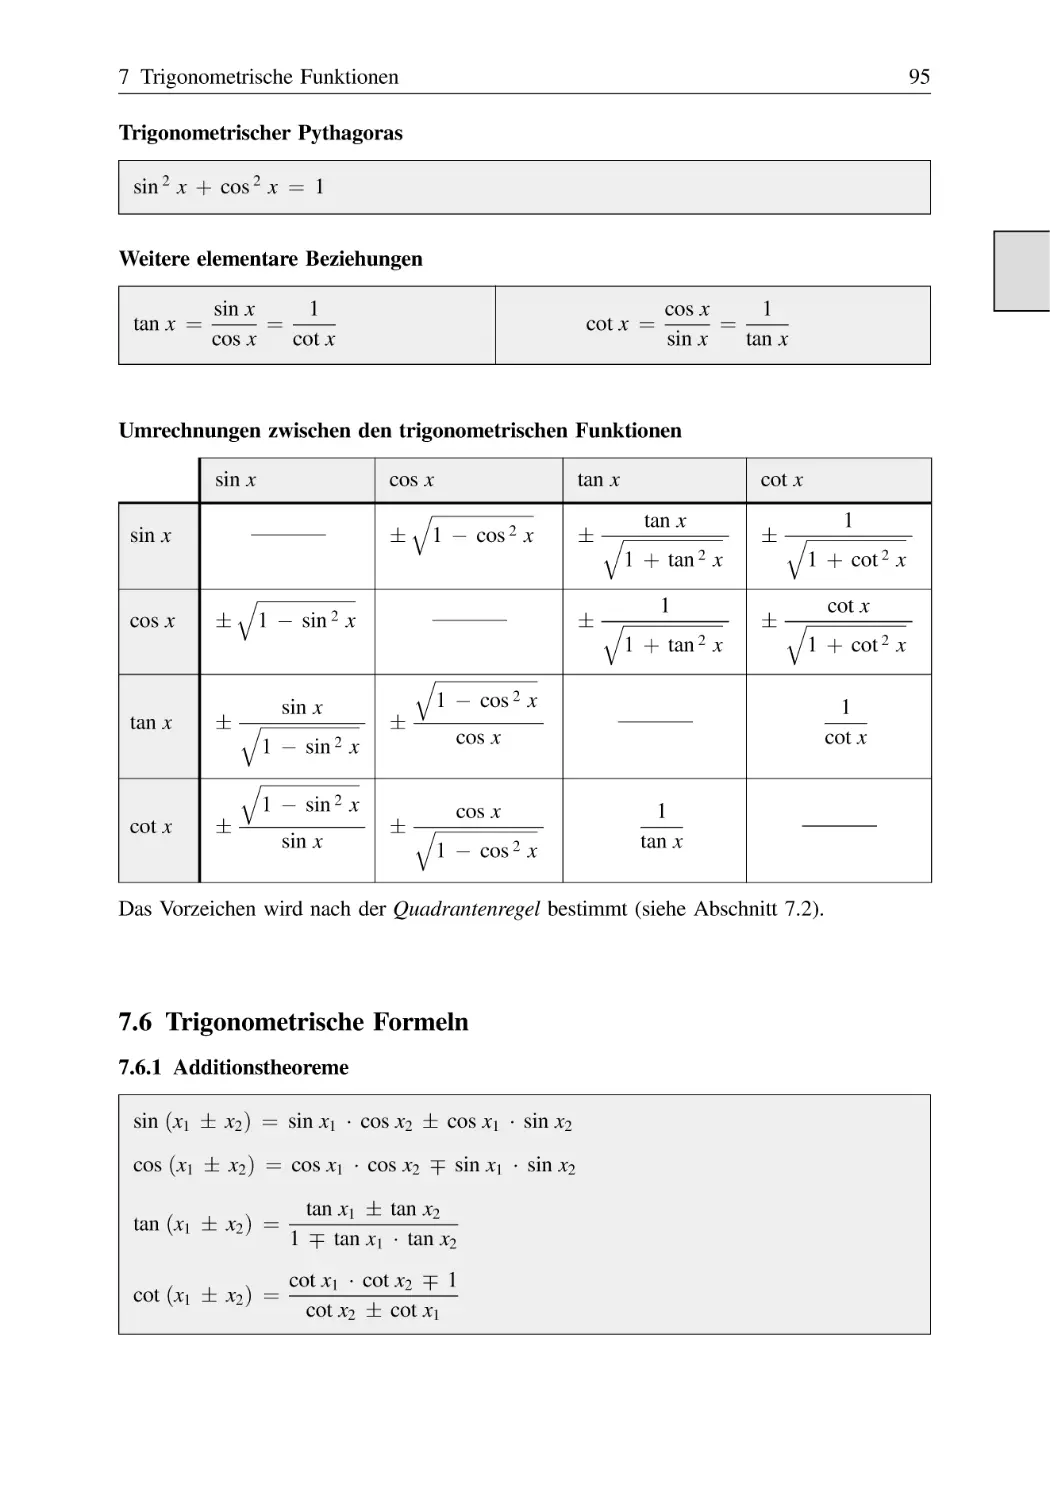 7.6 Trigonometrische Formeln
7.6.1 Additionstheoreme